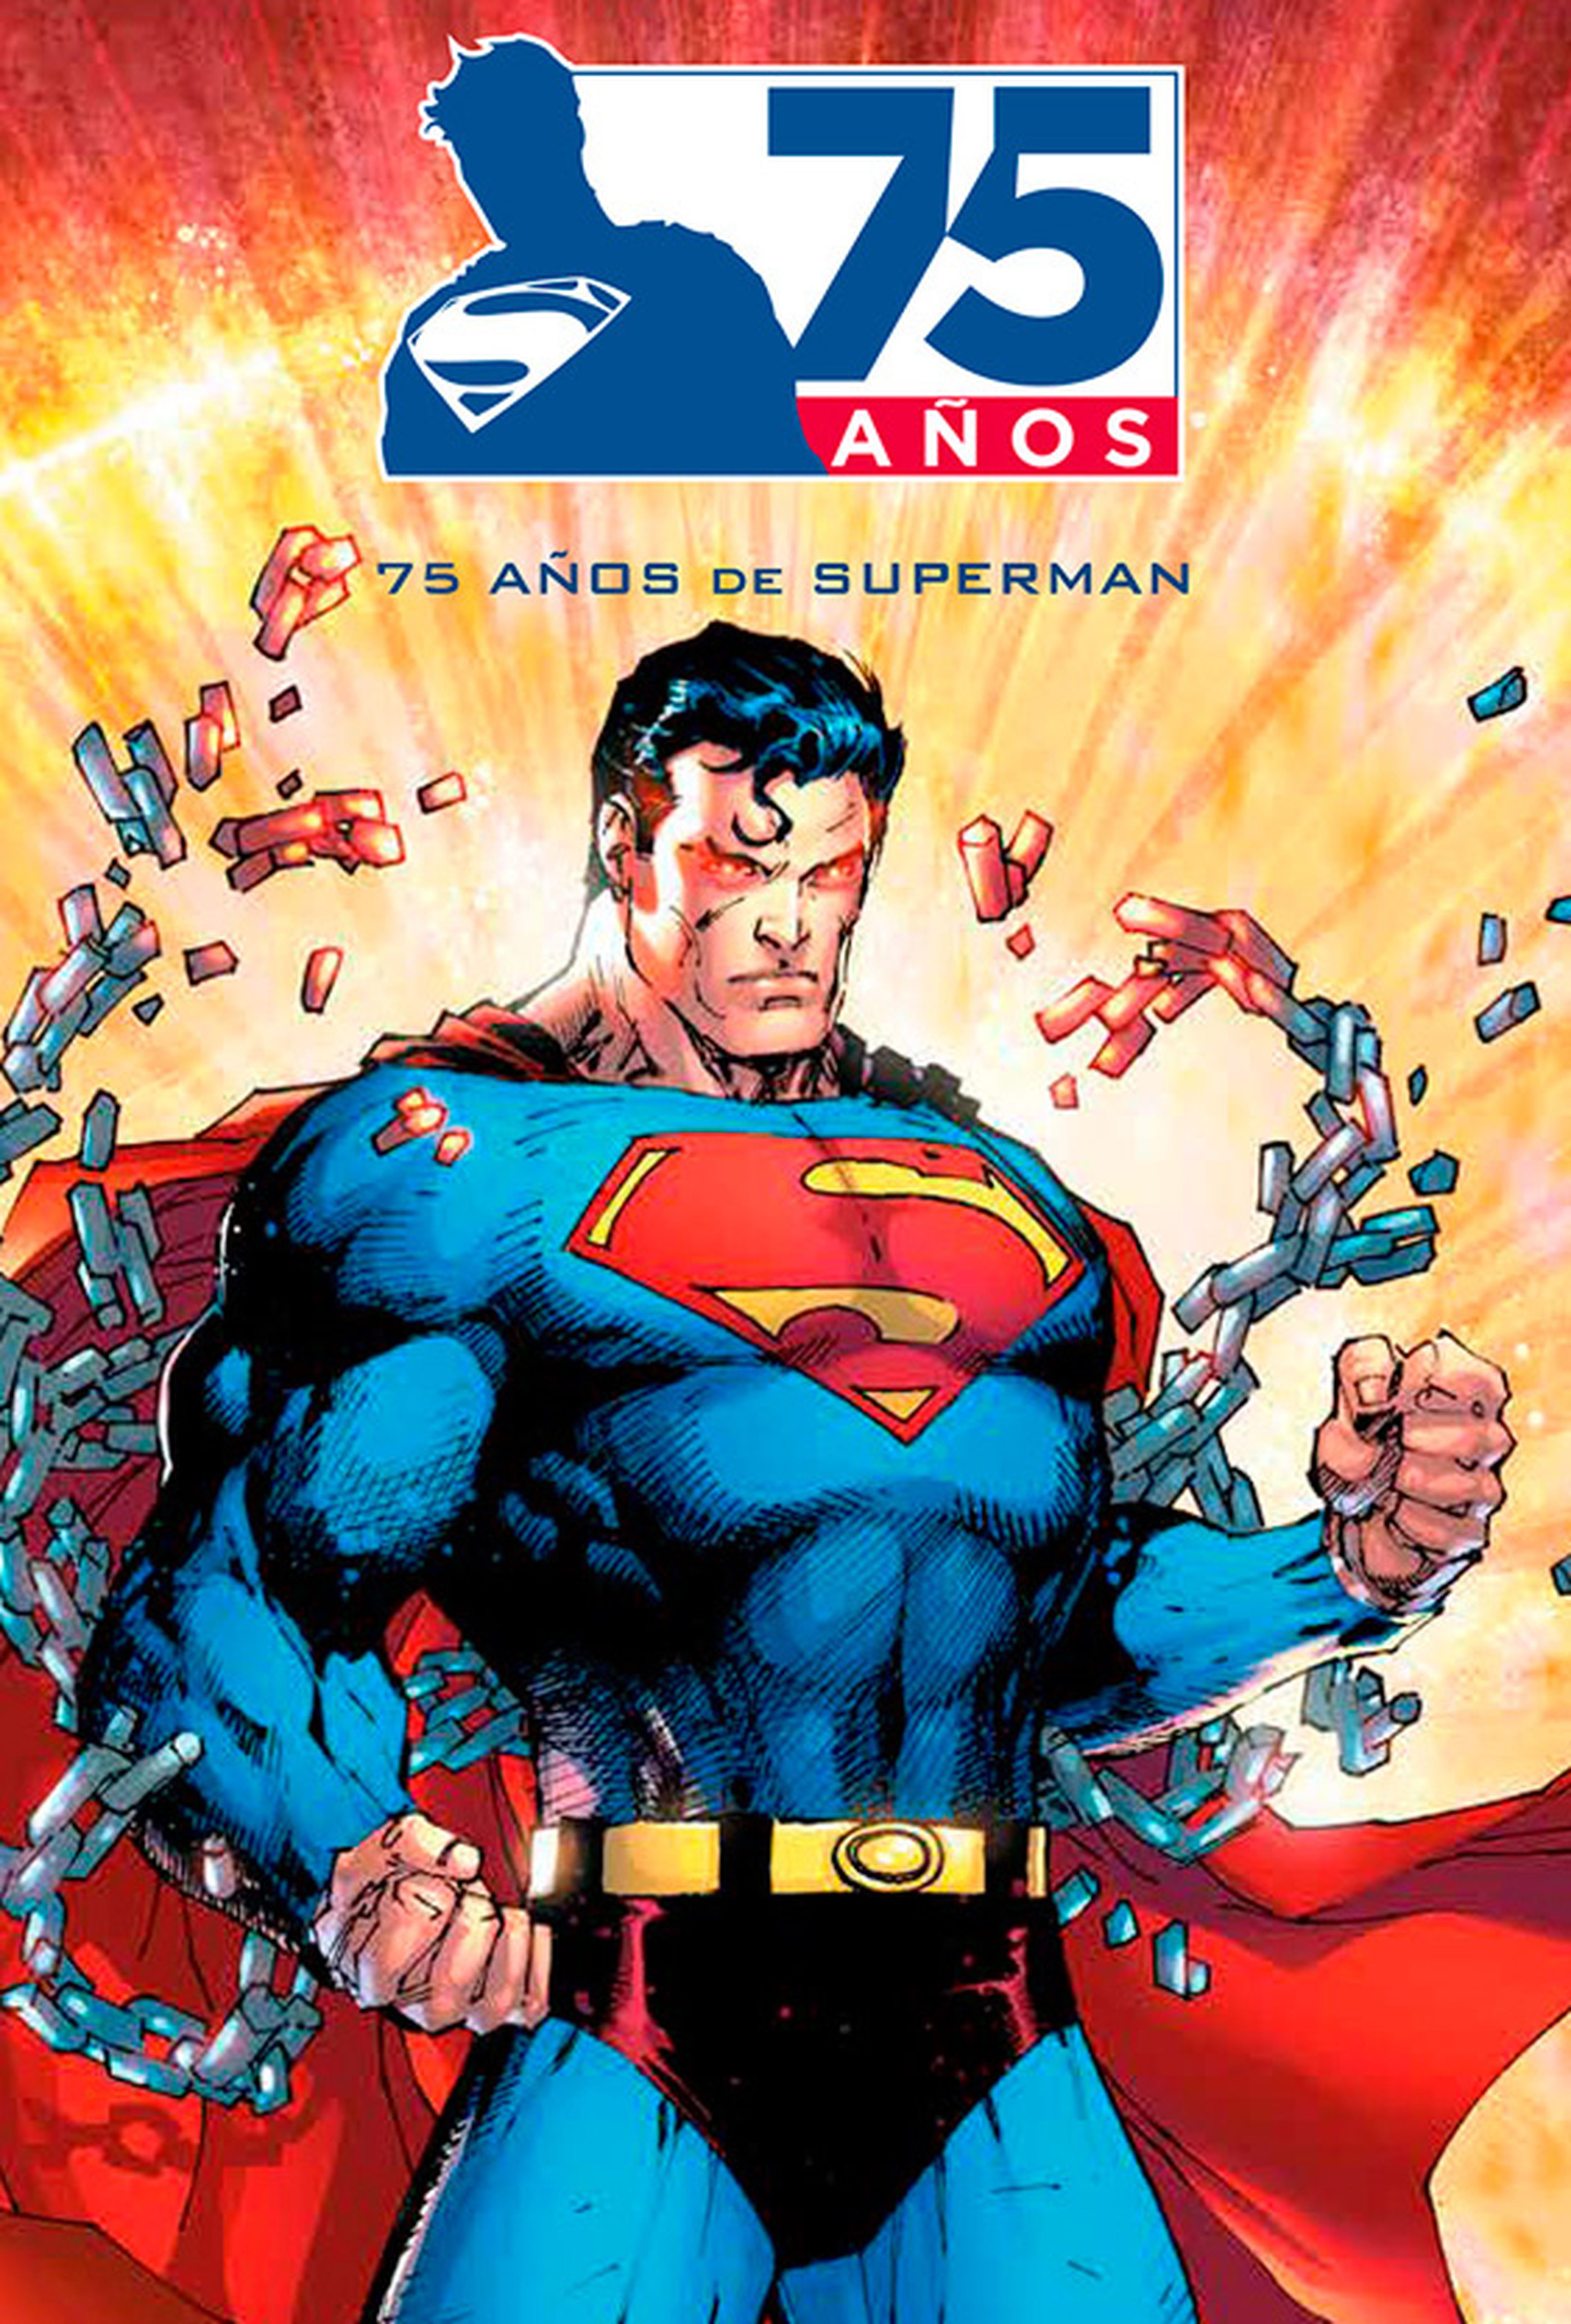 Action Comics (1938-2013): 75 años de Superman (Cómic) - Cartel